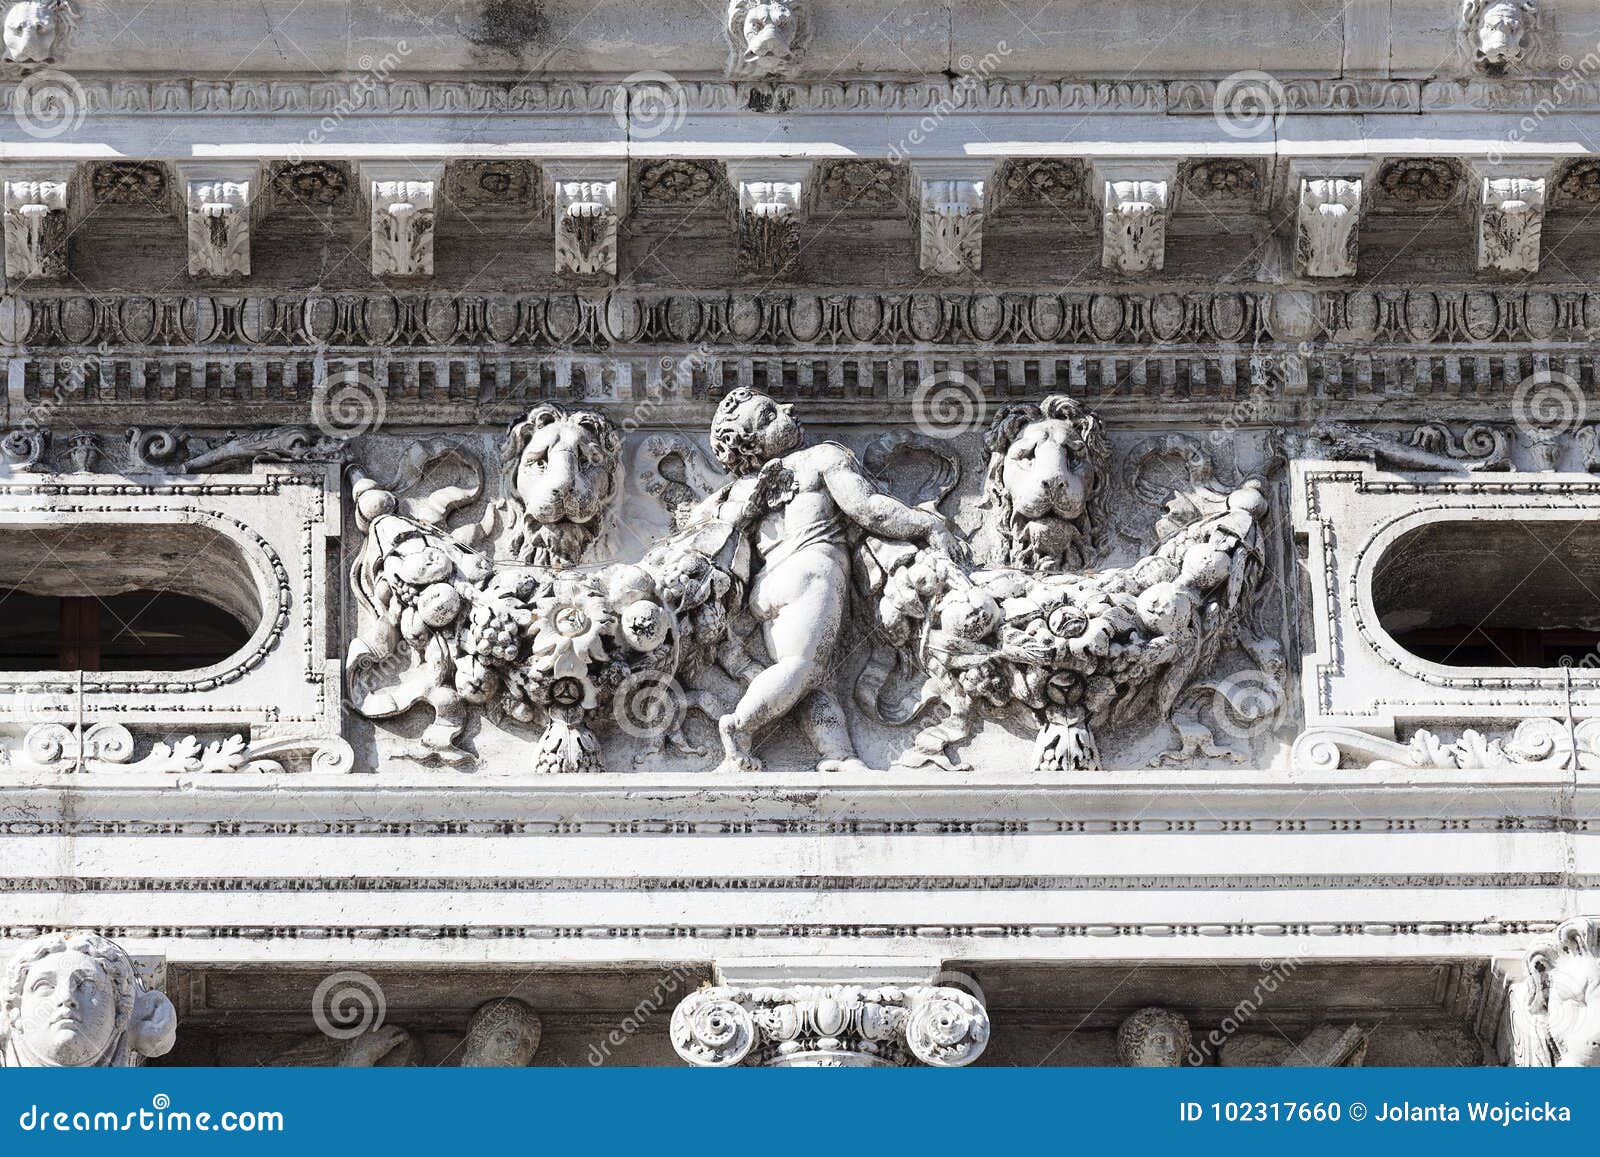 national library of st mark`s biblioteca marciana, facade, venice, italy